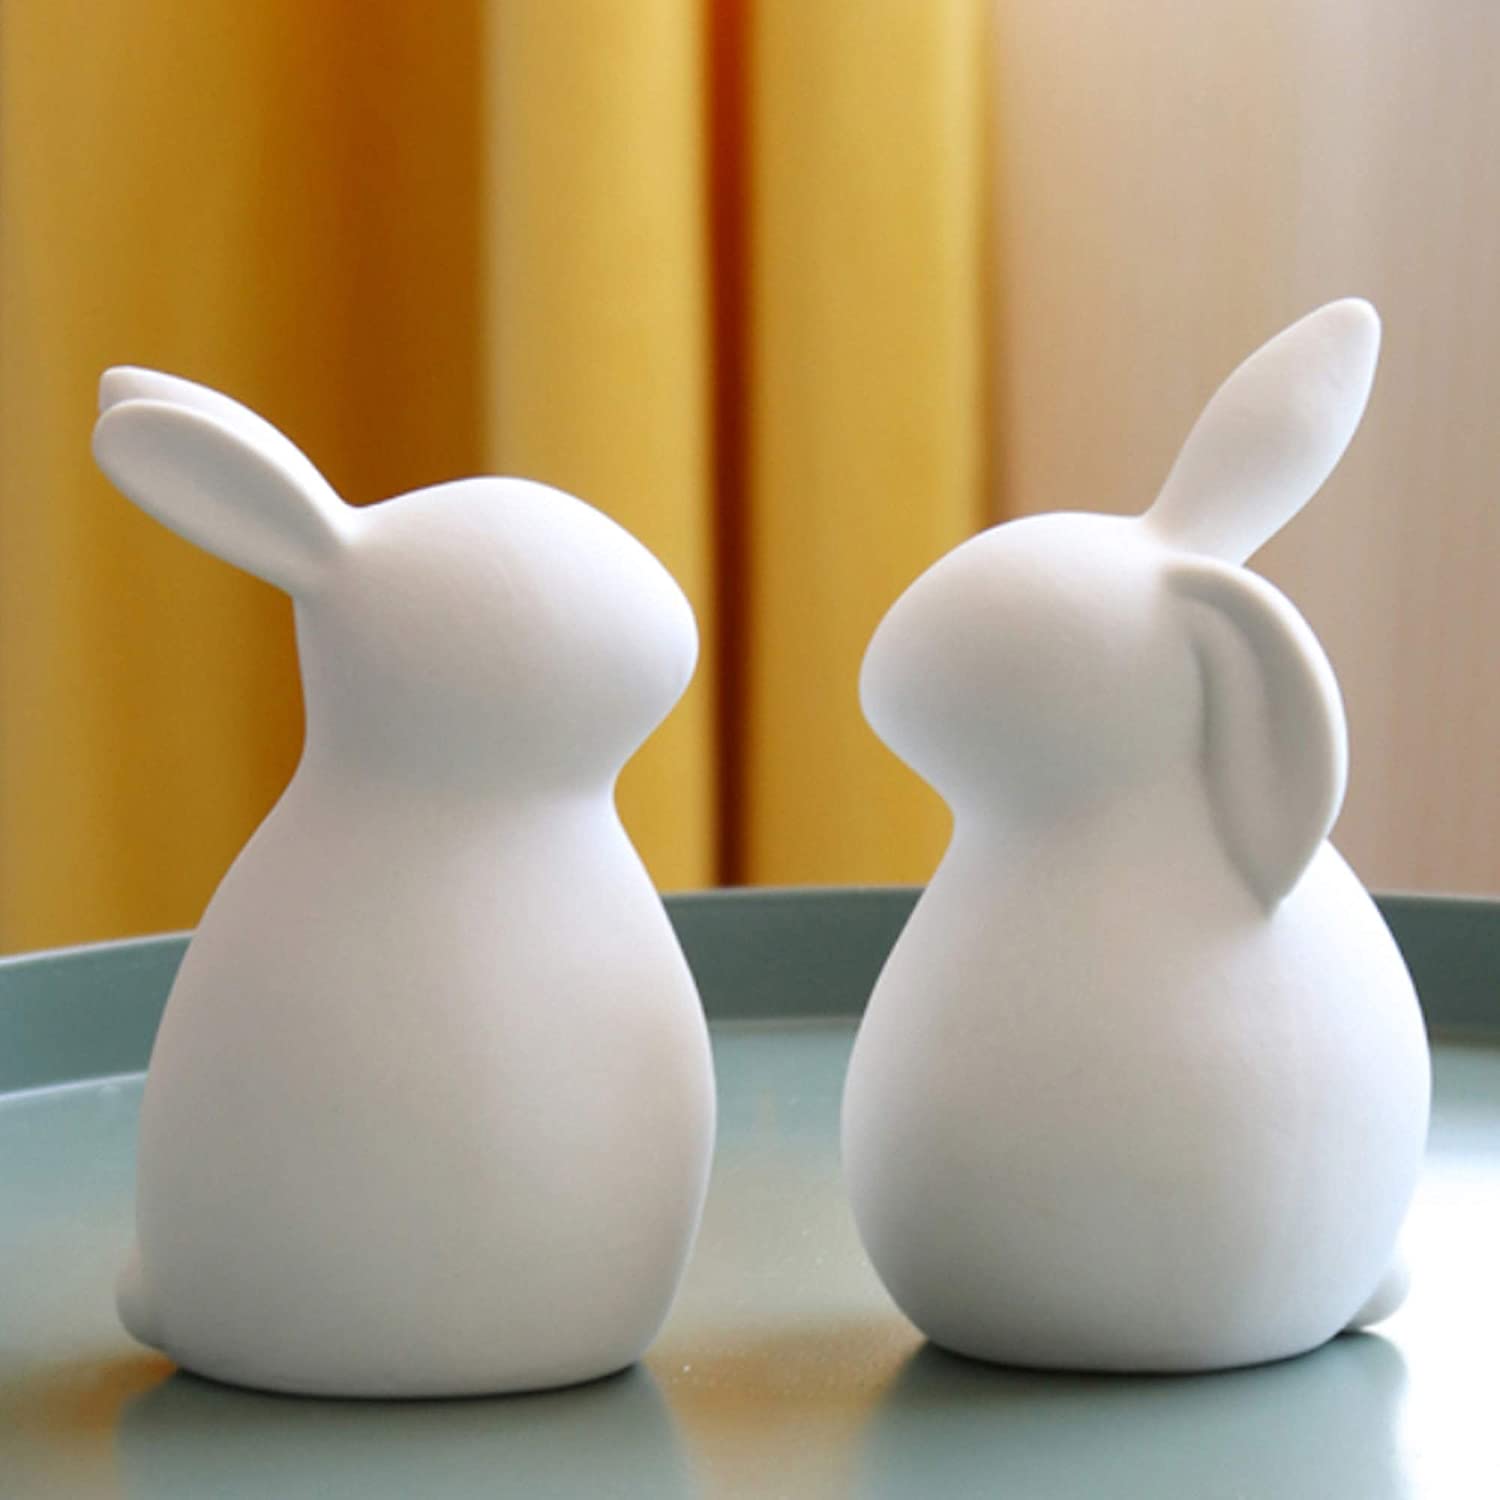 楽天HAYATE STORE白い陶製のウサギの置物、リビングの装飾、退職 プチギフト お歳暮 お年賀 ギフト 誕生日 プレゼント 内祝い セラミッククラフトウサギ、リビングルームの装飾